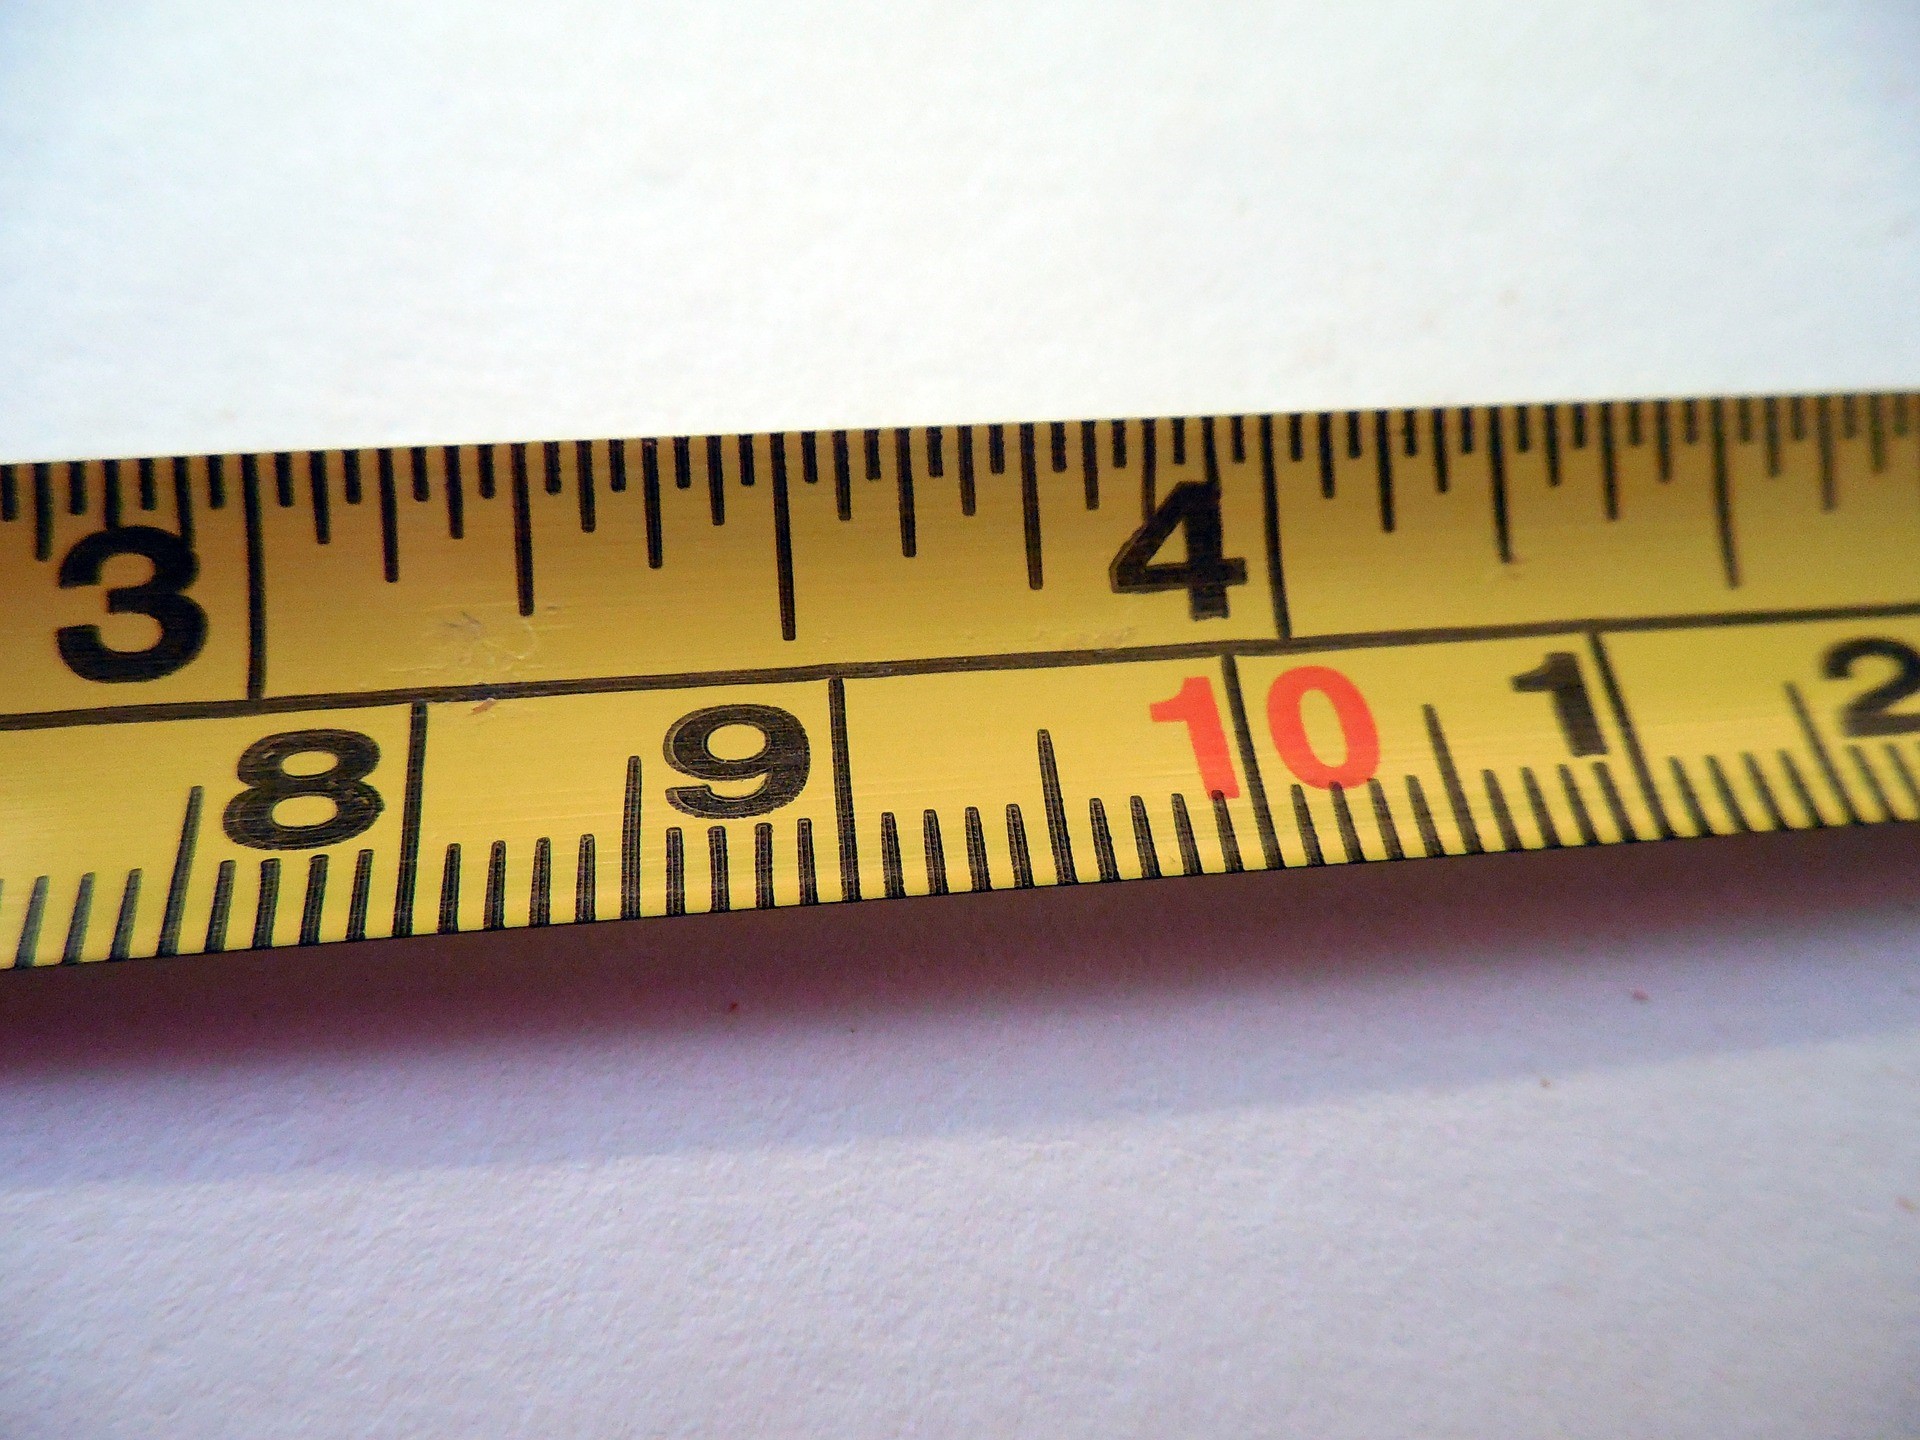 tape ruler measurements